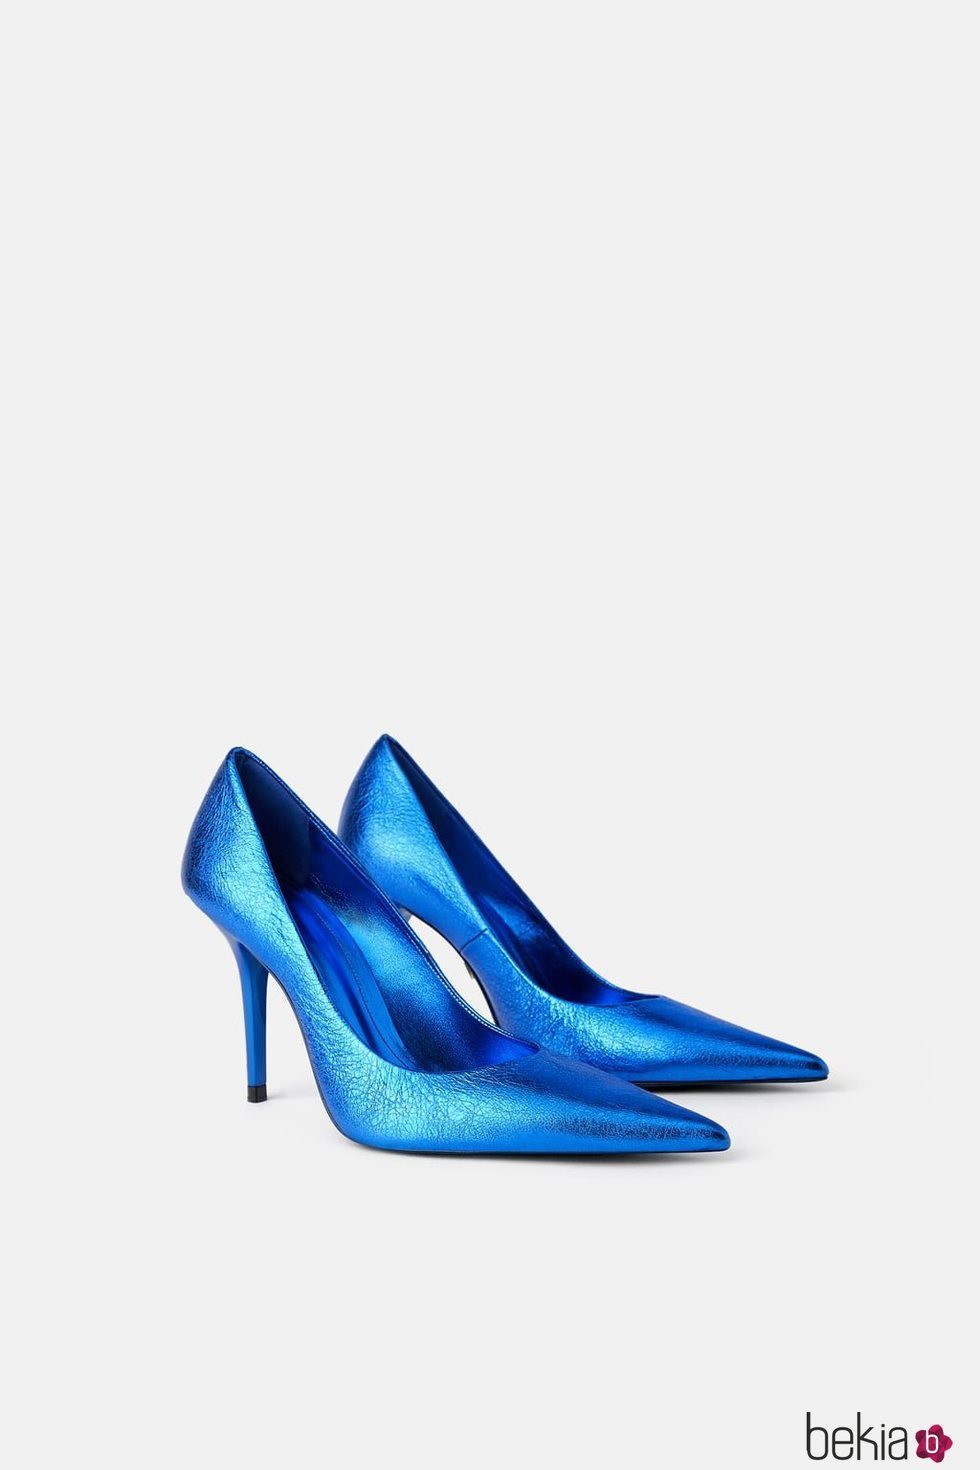 Zapato cerrado de tacón de la colección Blue Collection de Zara 2019